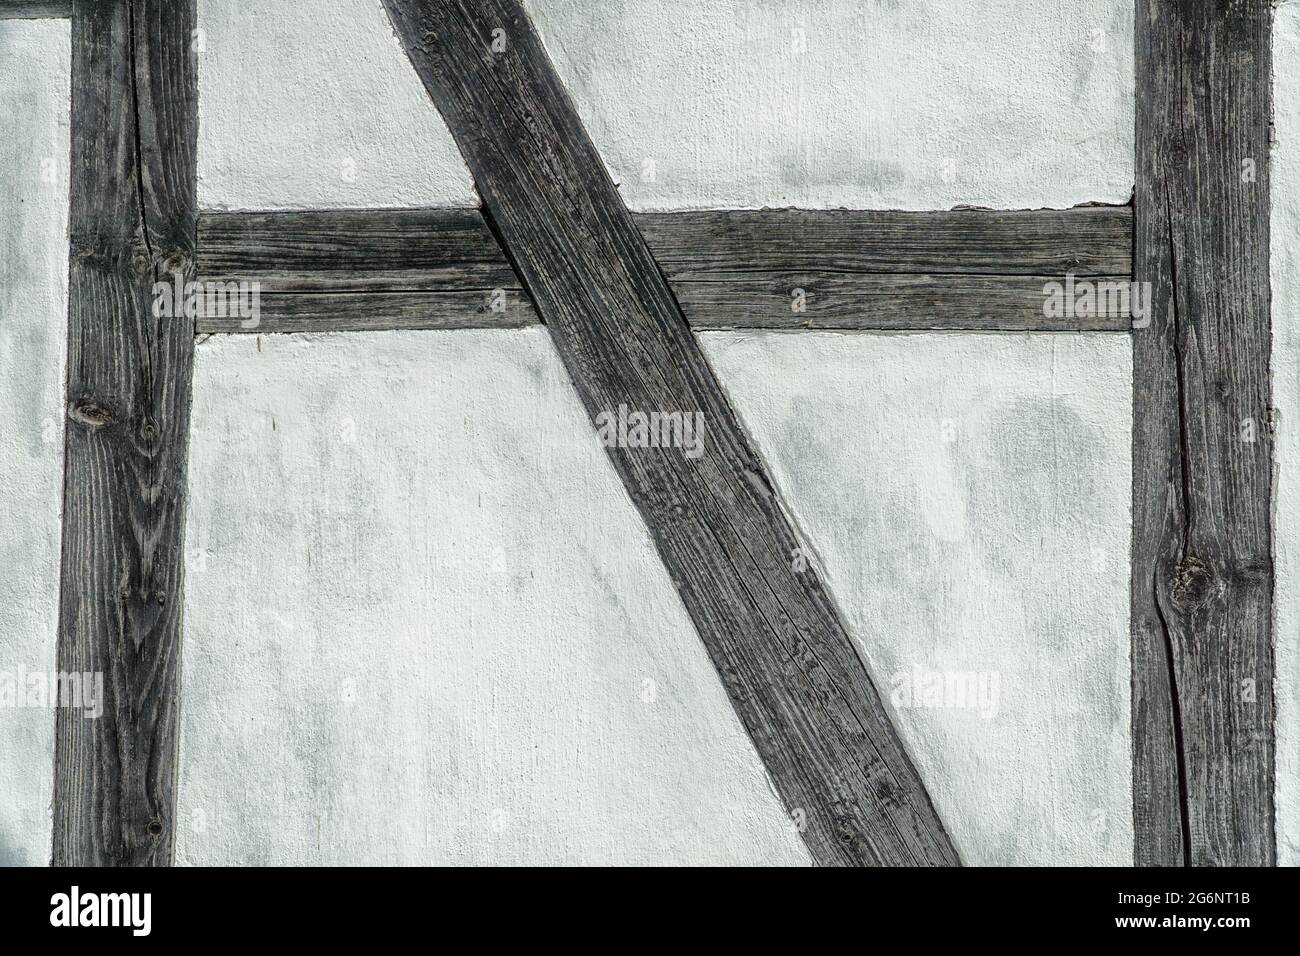 Particolare della parete del telaio in legno. Parete bianca e barre scure. Foto Stock